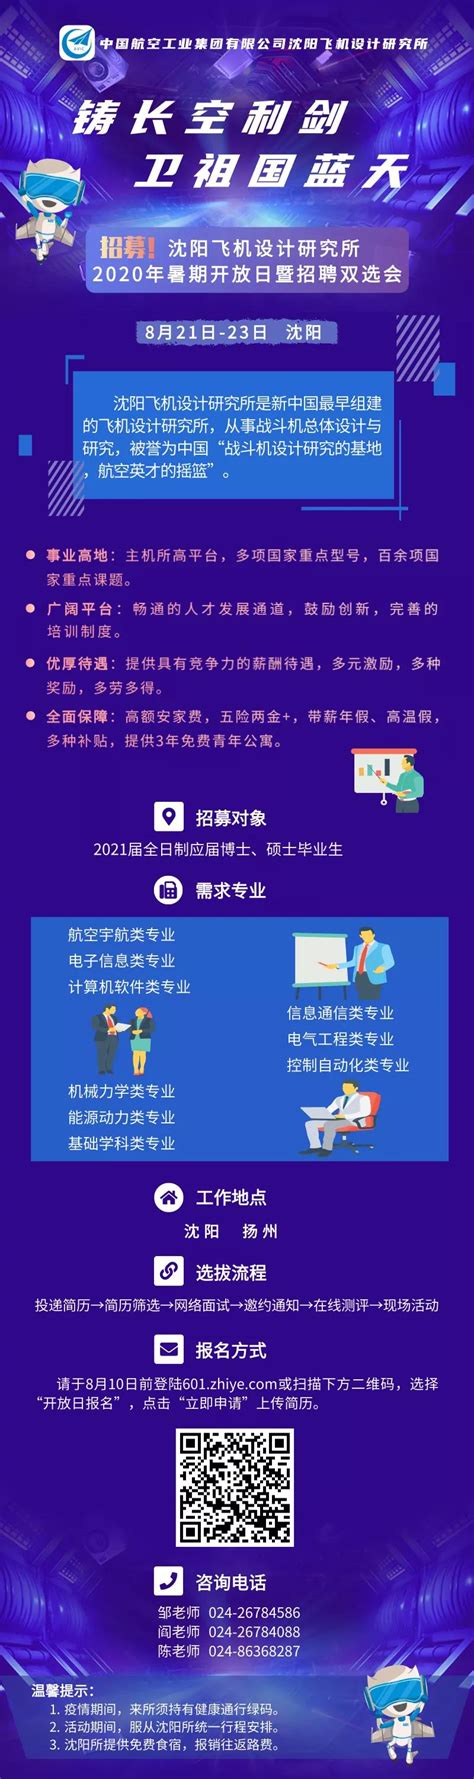 中航工业沈阳飞机设计研究所(601所)2021招聘__科信教育官网